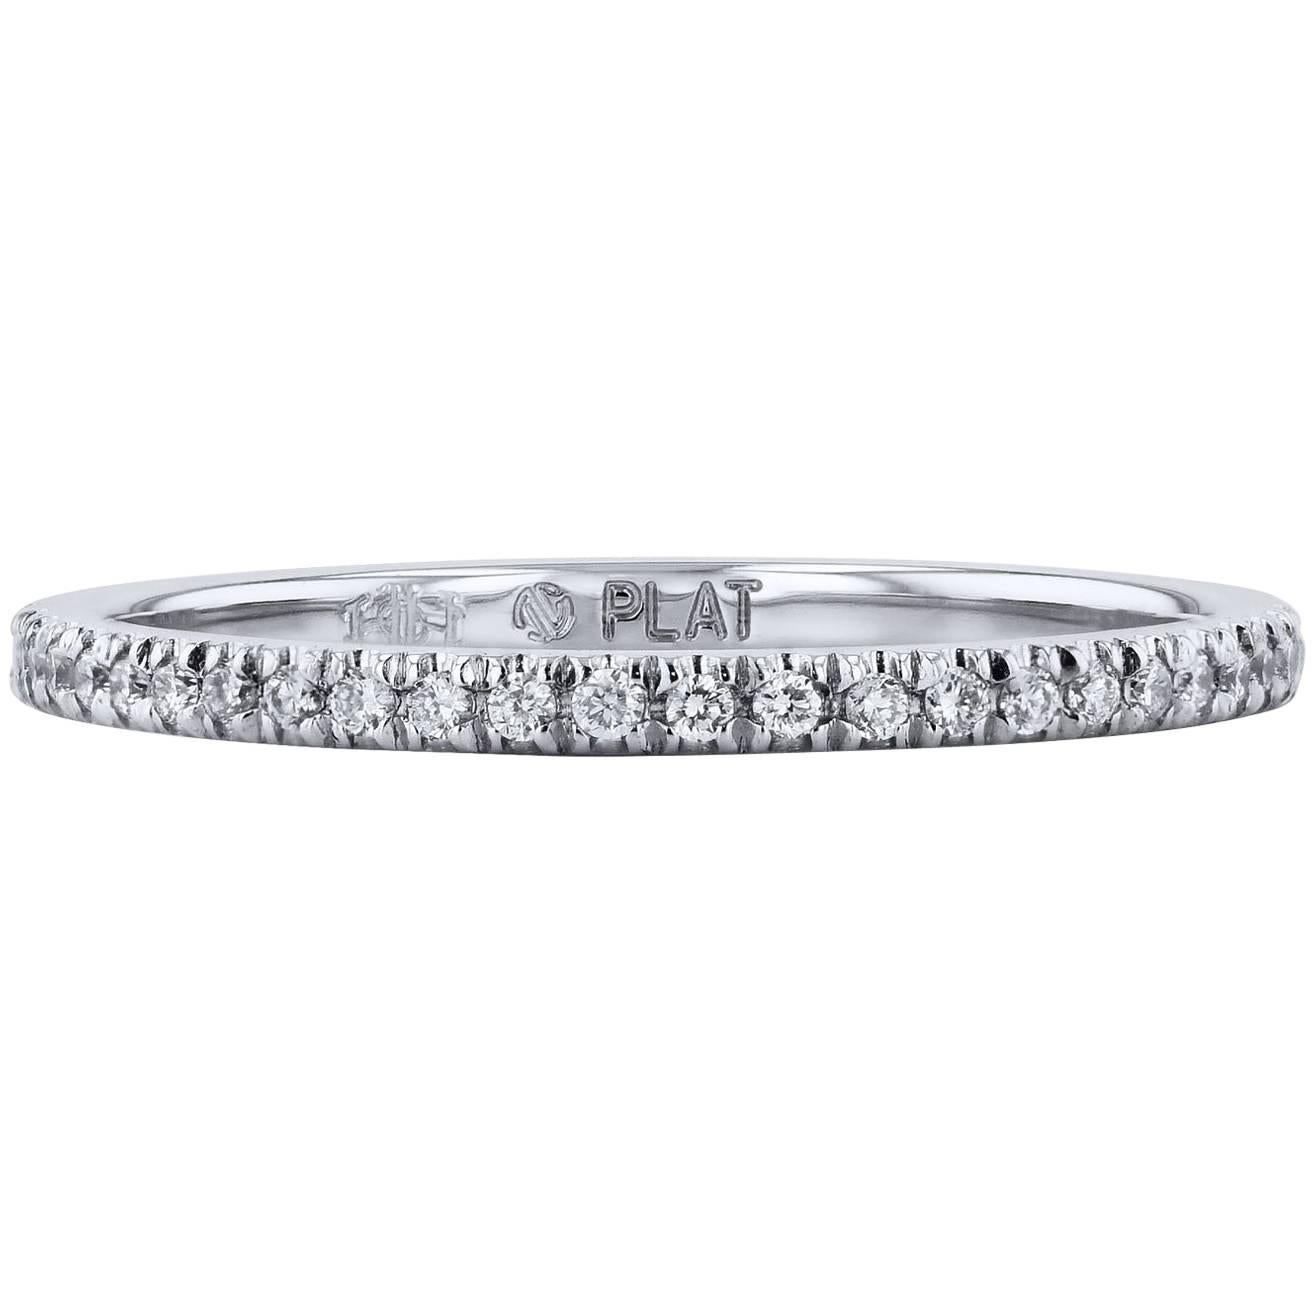 H & H 0.13 Carat Diamond Pave Band Ring